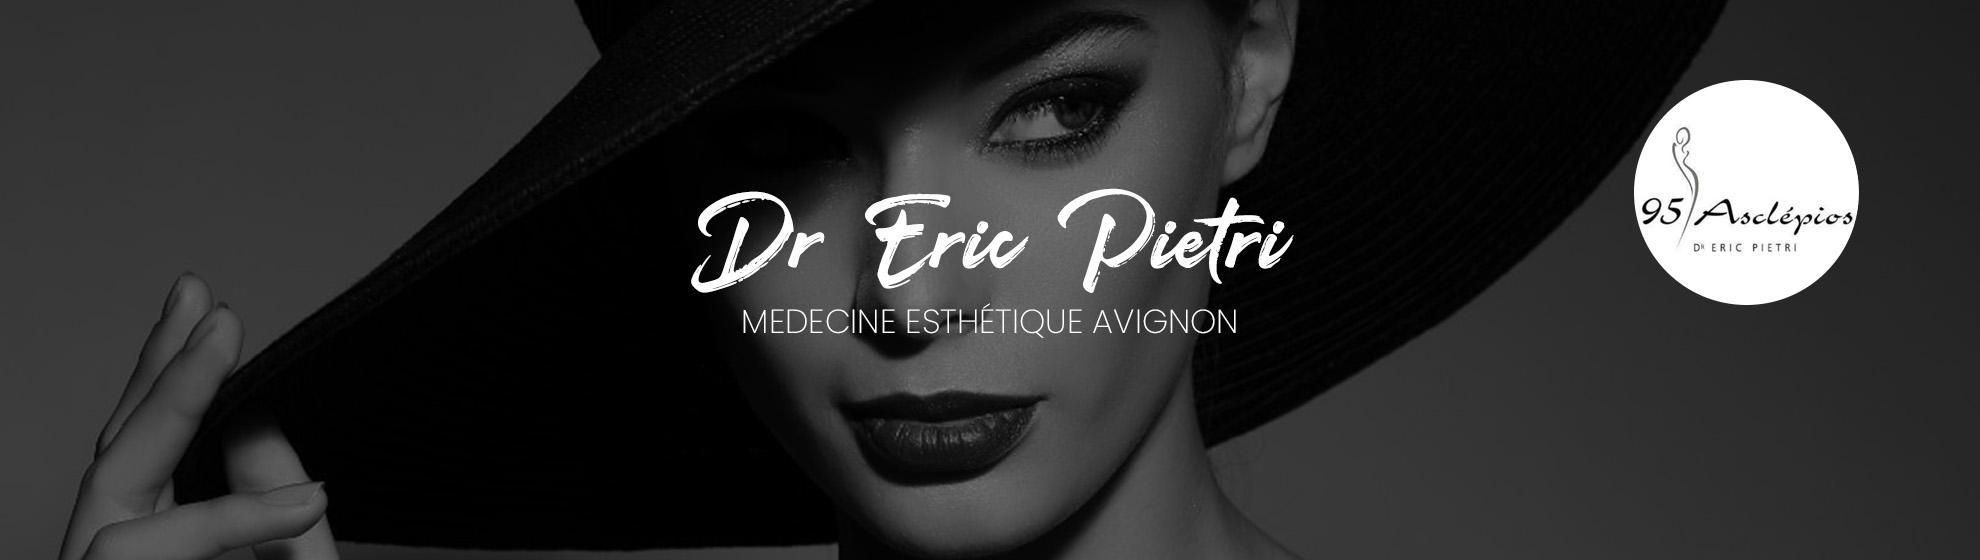 Dr Eric Pietri